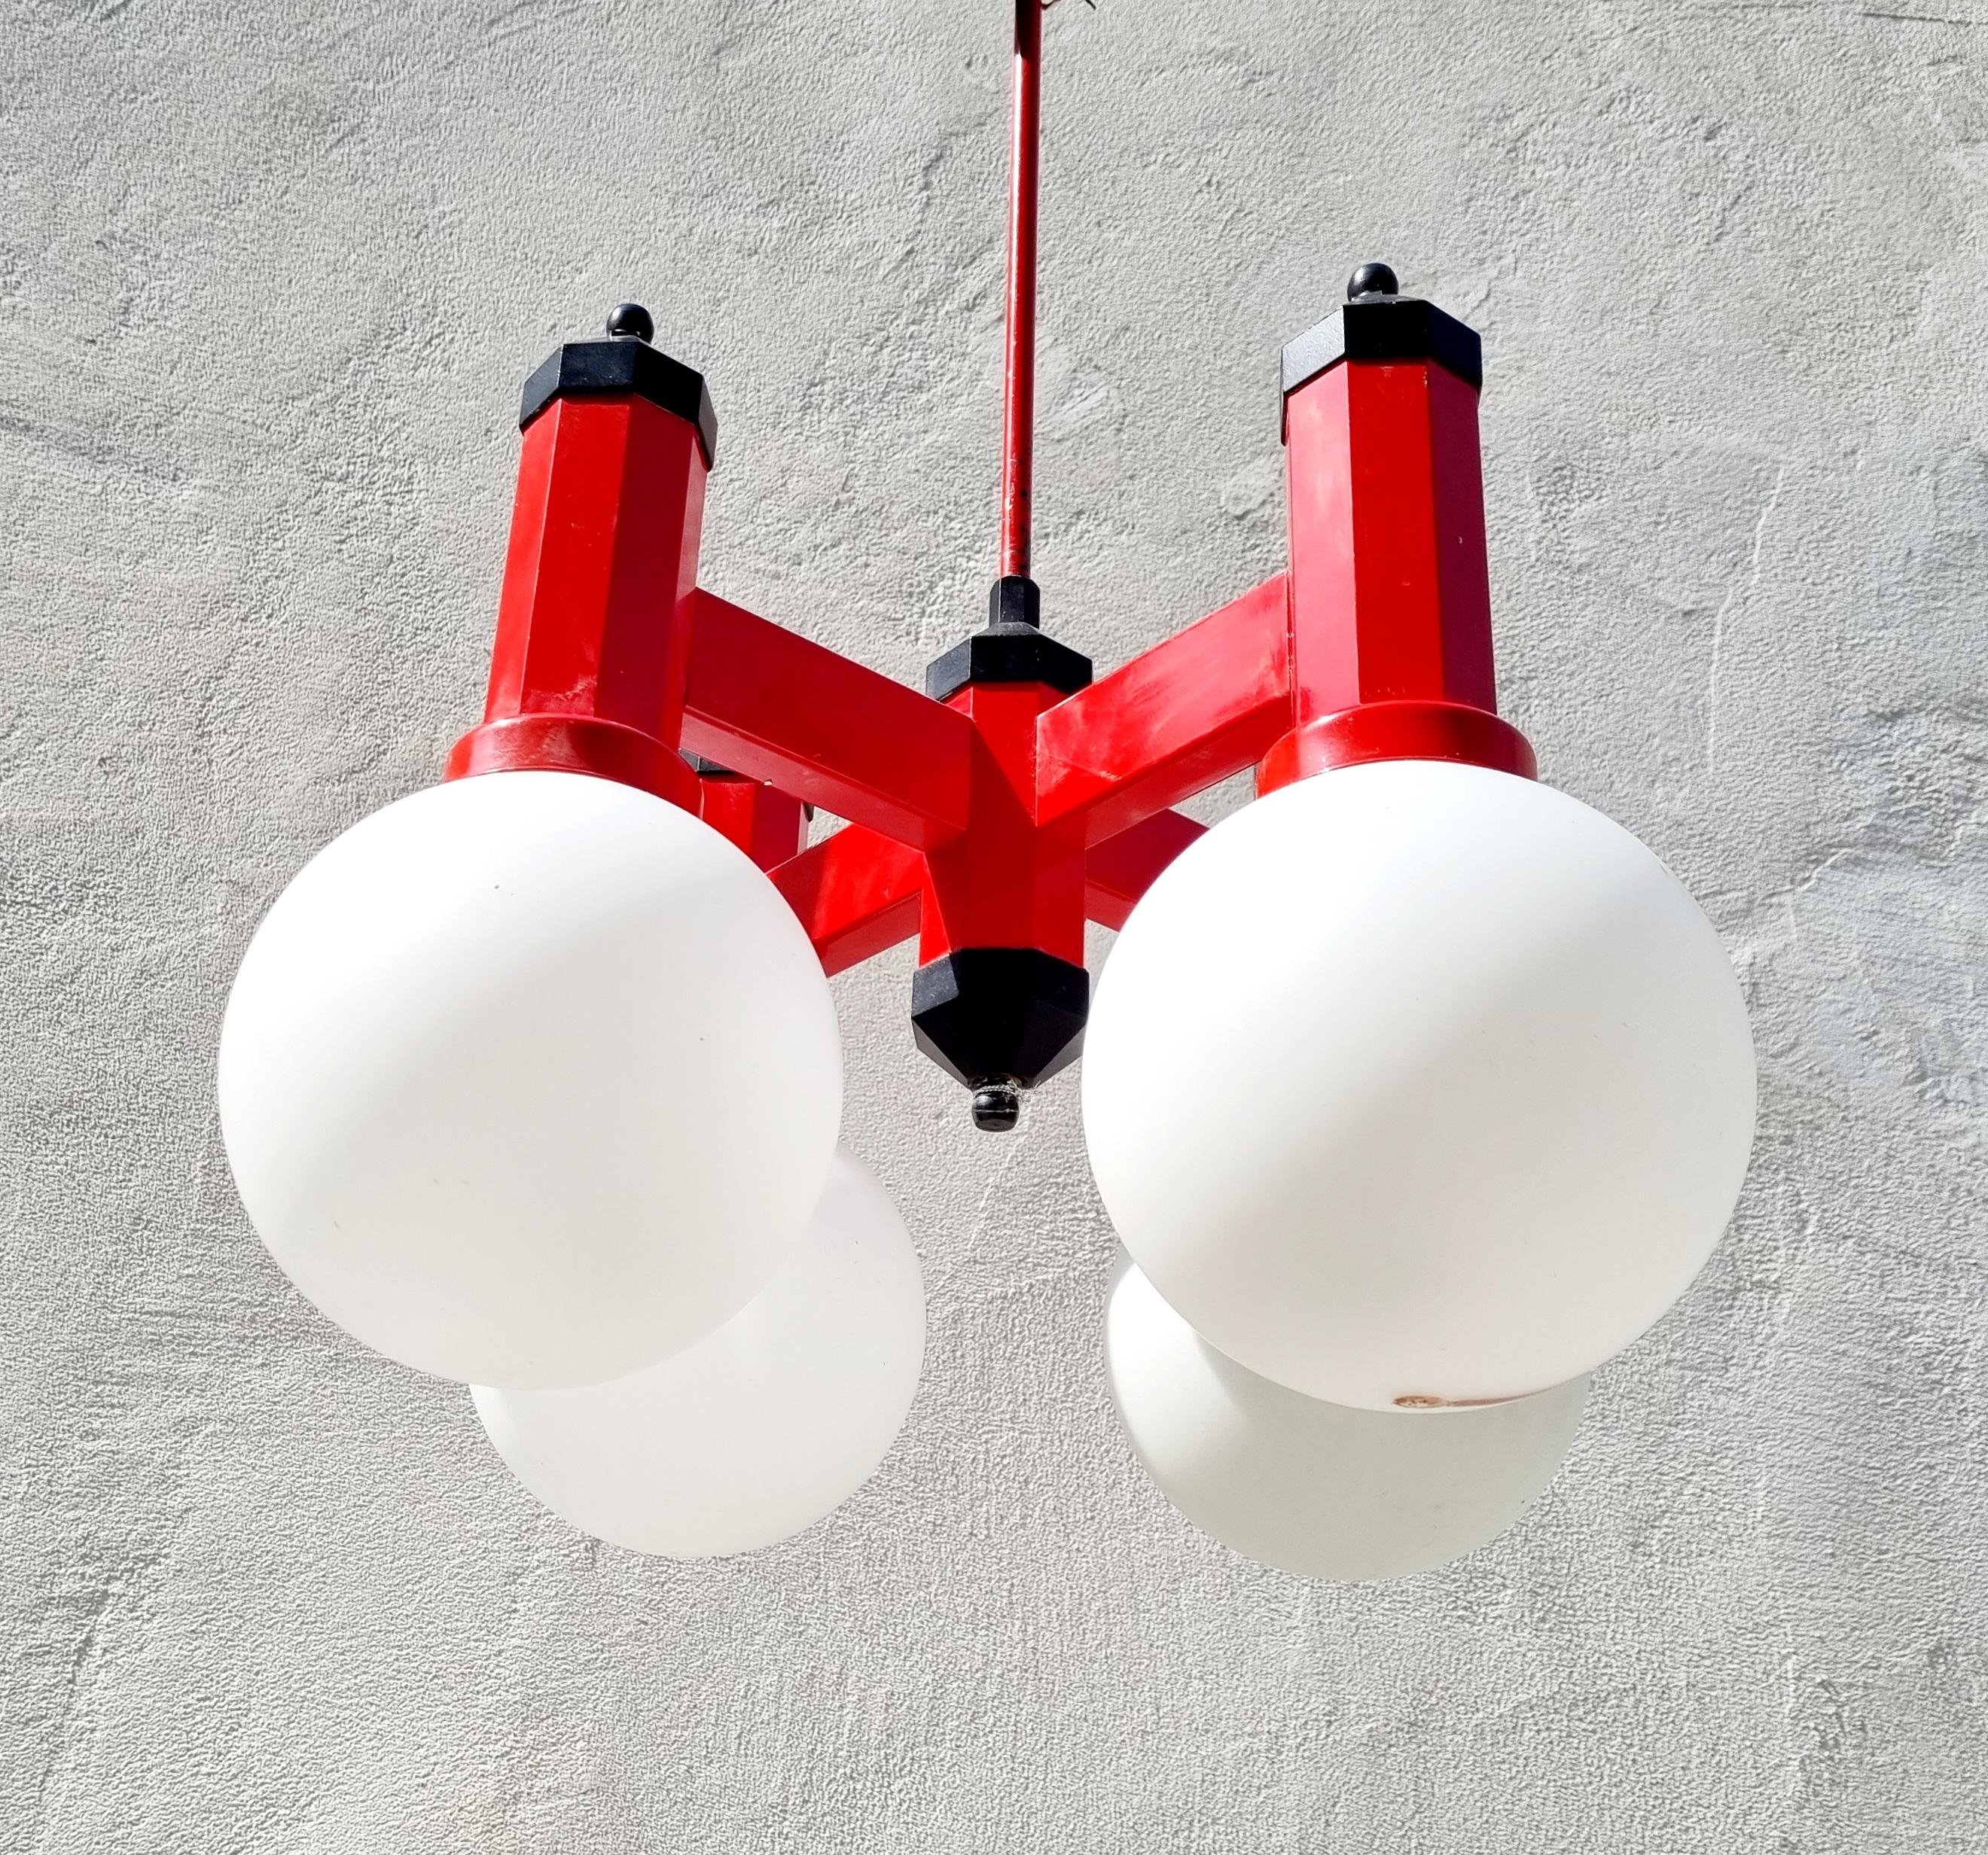 Der vierarmige Mid Century Modern Kronleuchter aus den 70er Jahren wurde in Jugoslawien hergestellt.
Sie besteht aus einem roten Metallsockel und vier Milchglasschirmen.
Die Lampe funktioniert perfekt. Es ist sehr einzigartig und stilvoll. Sehr